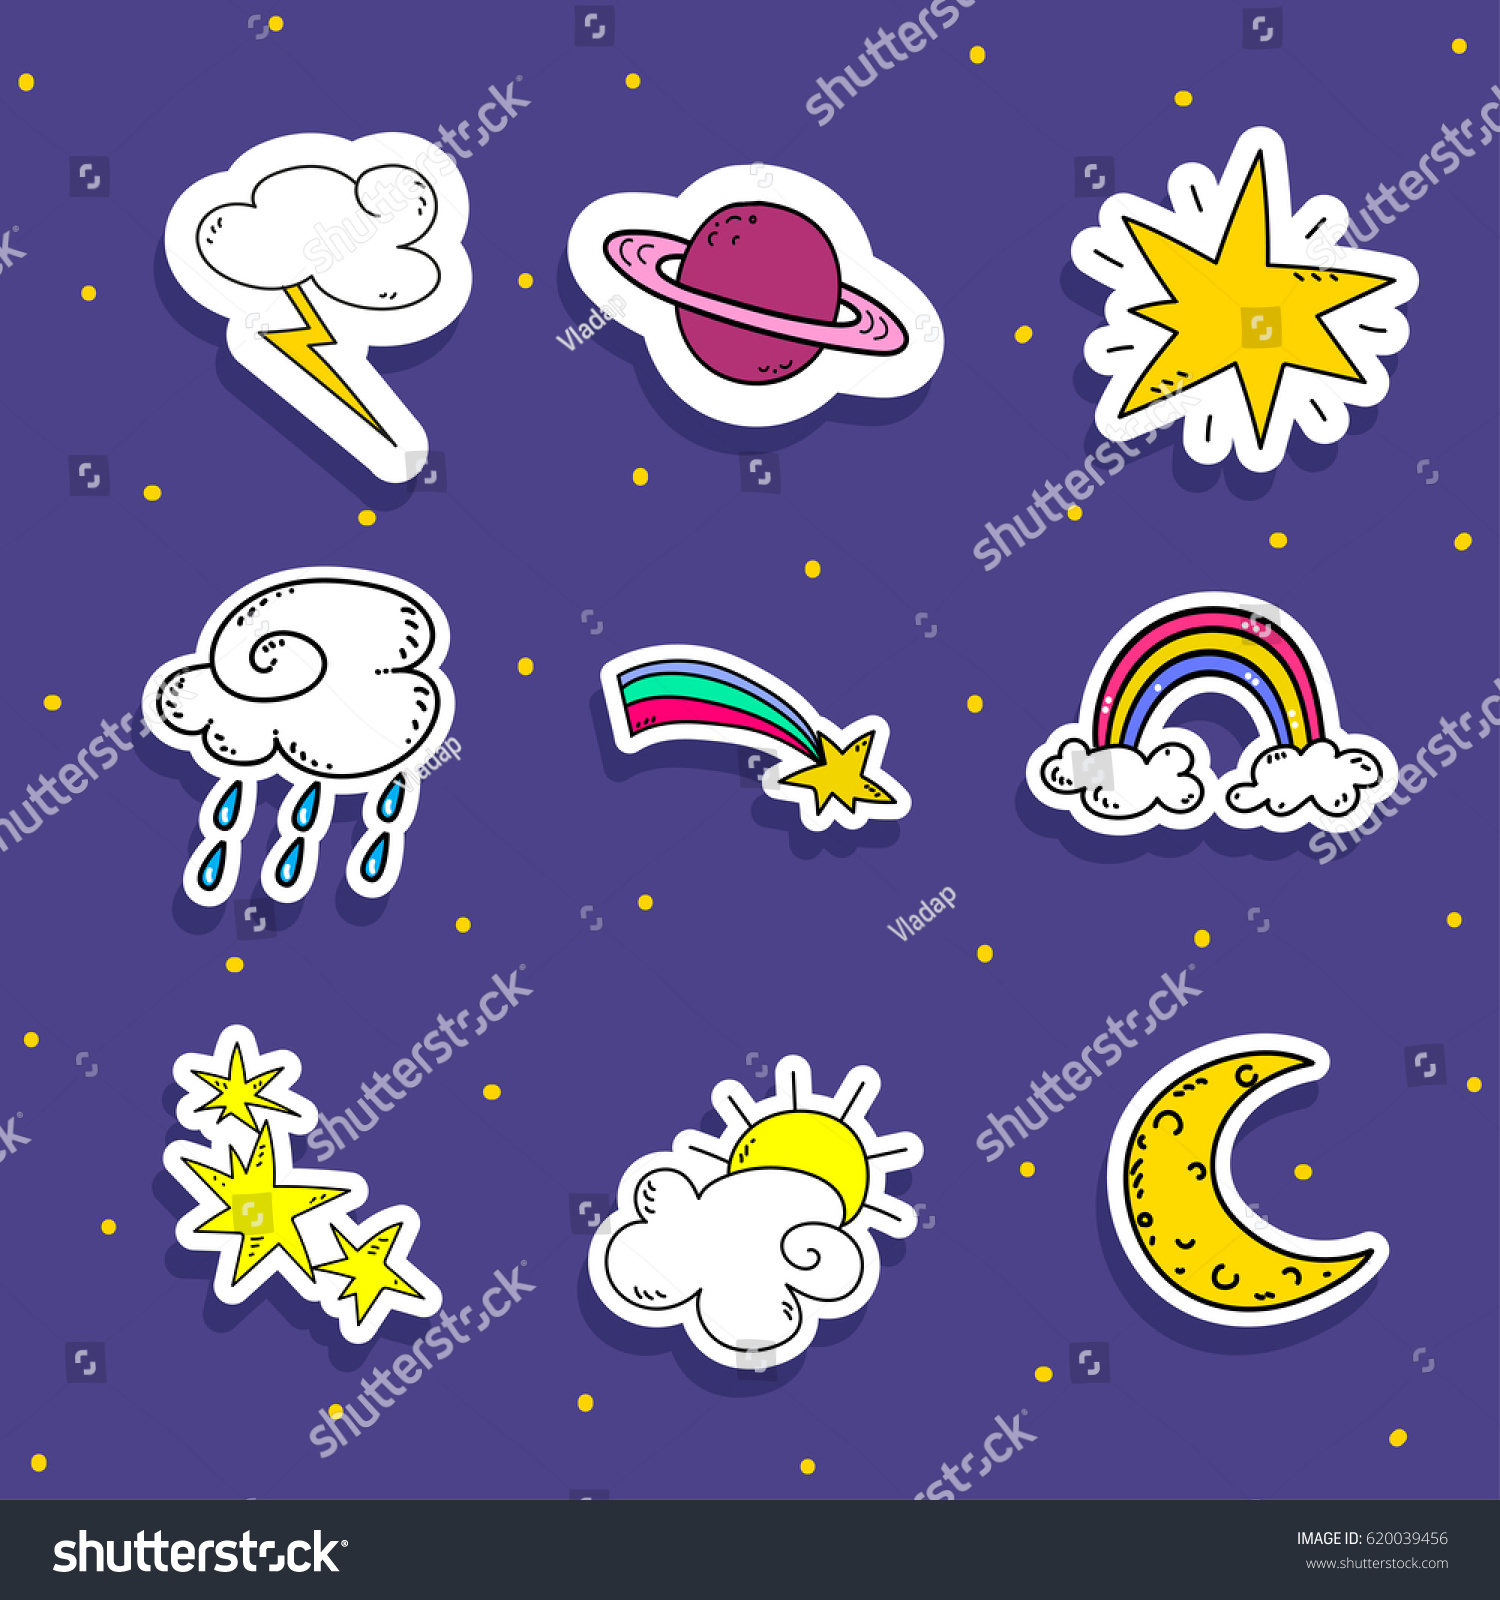 Sky stickers